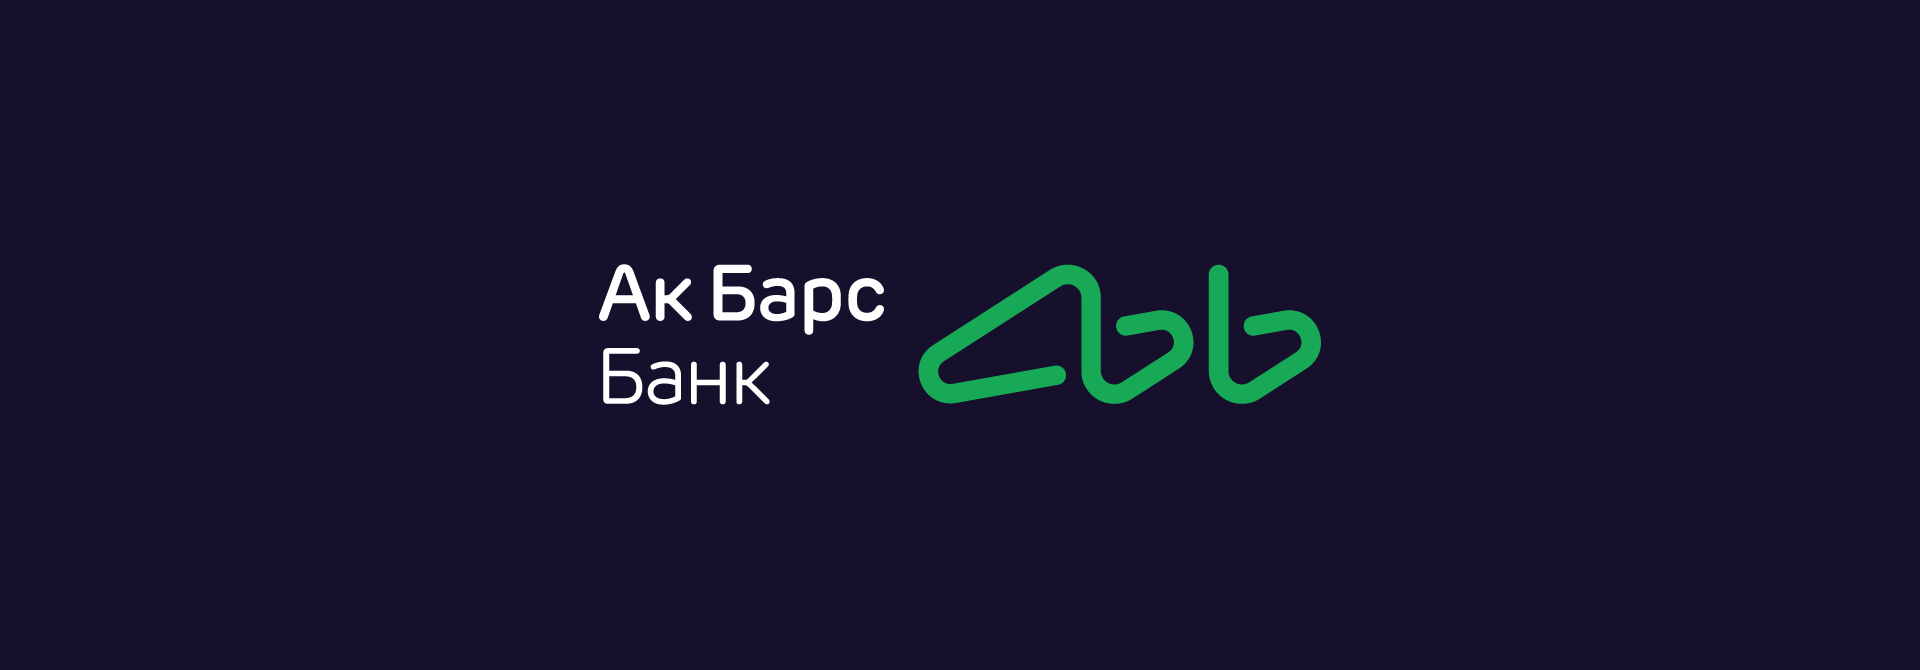 Акбарсбанк банк телефон горячей линии. АК Барс банк реклама. АК Барс банк логотип 2023. АК Барс банк картинки. Барс банк логотип.